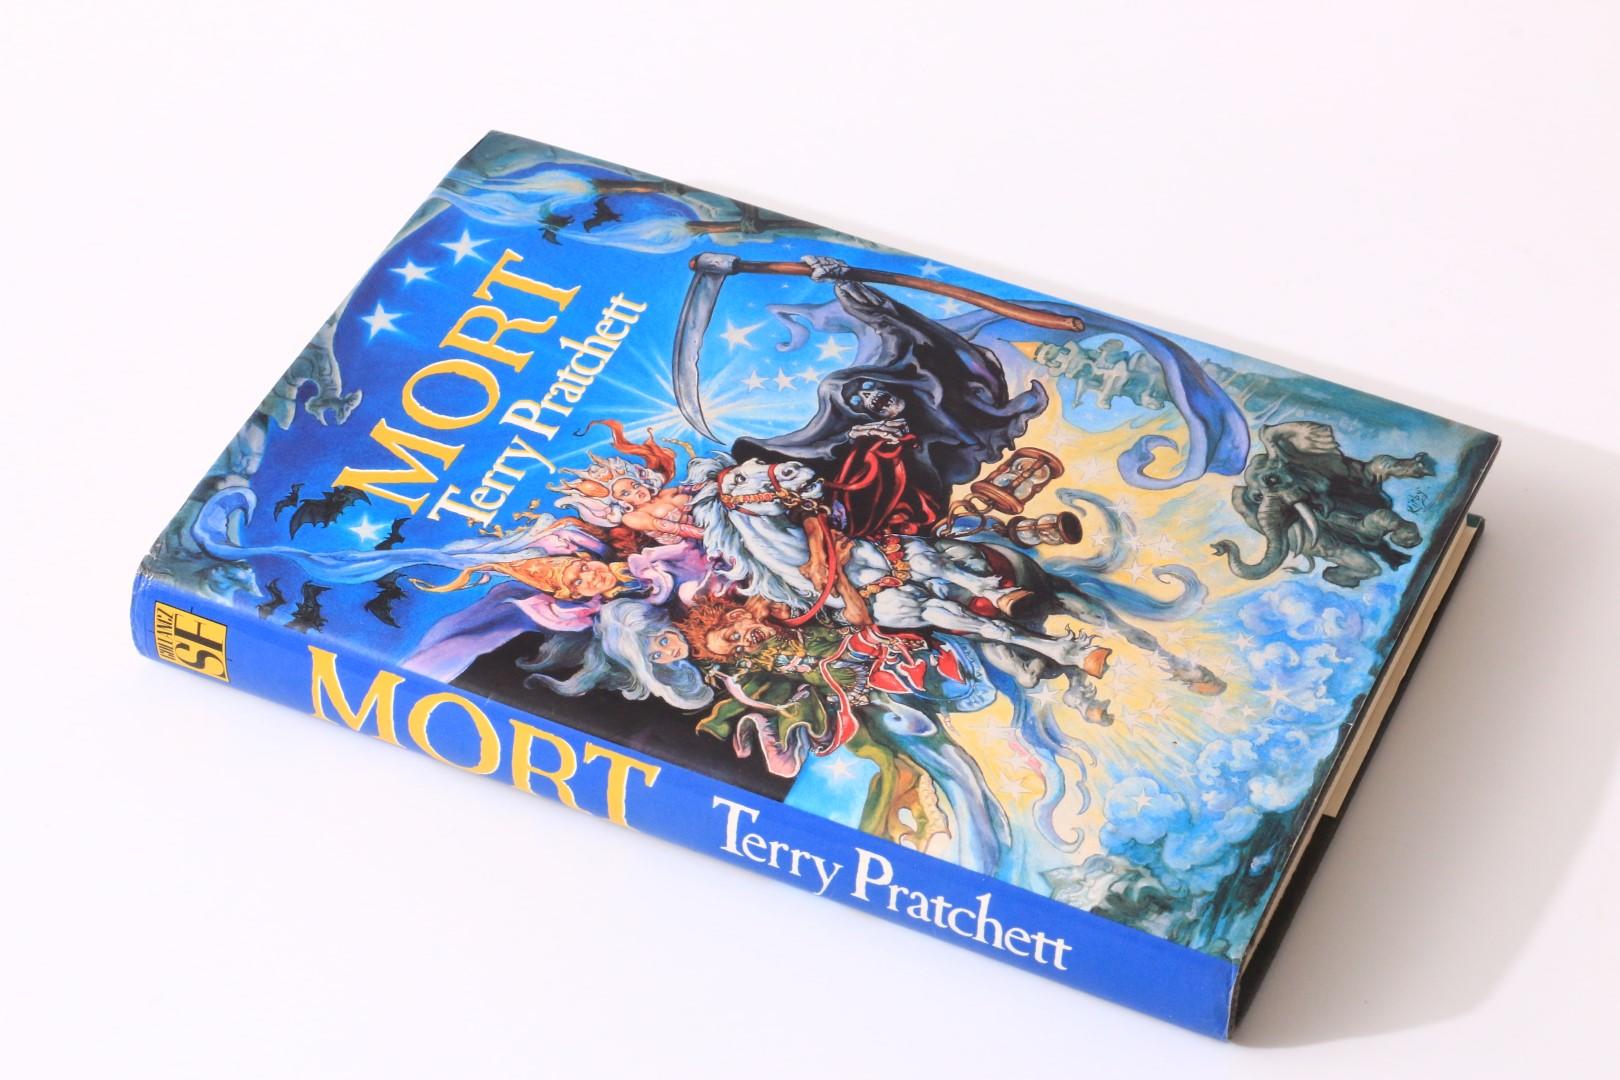 Terry Pratchett - Mort - Gollancz, 1987, First Edition.